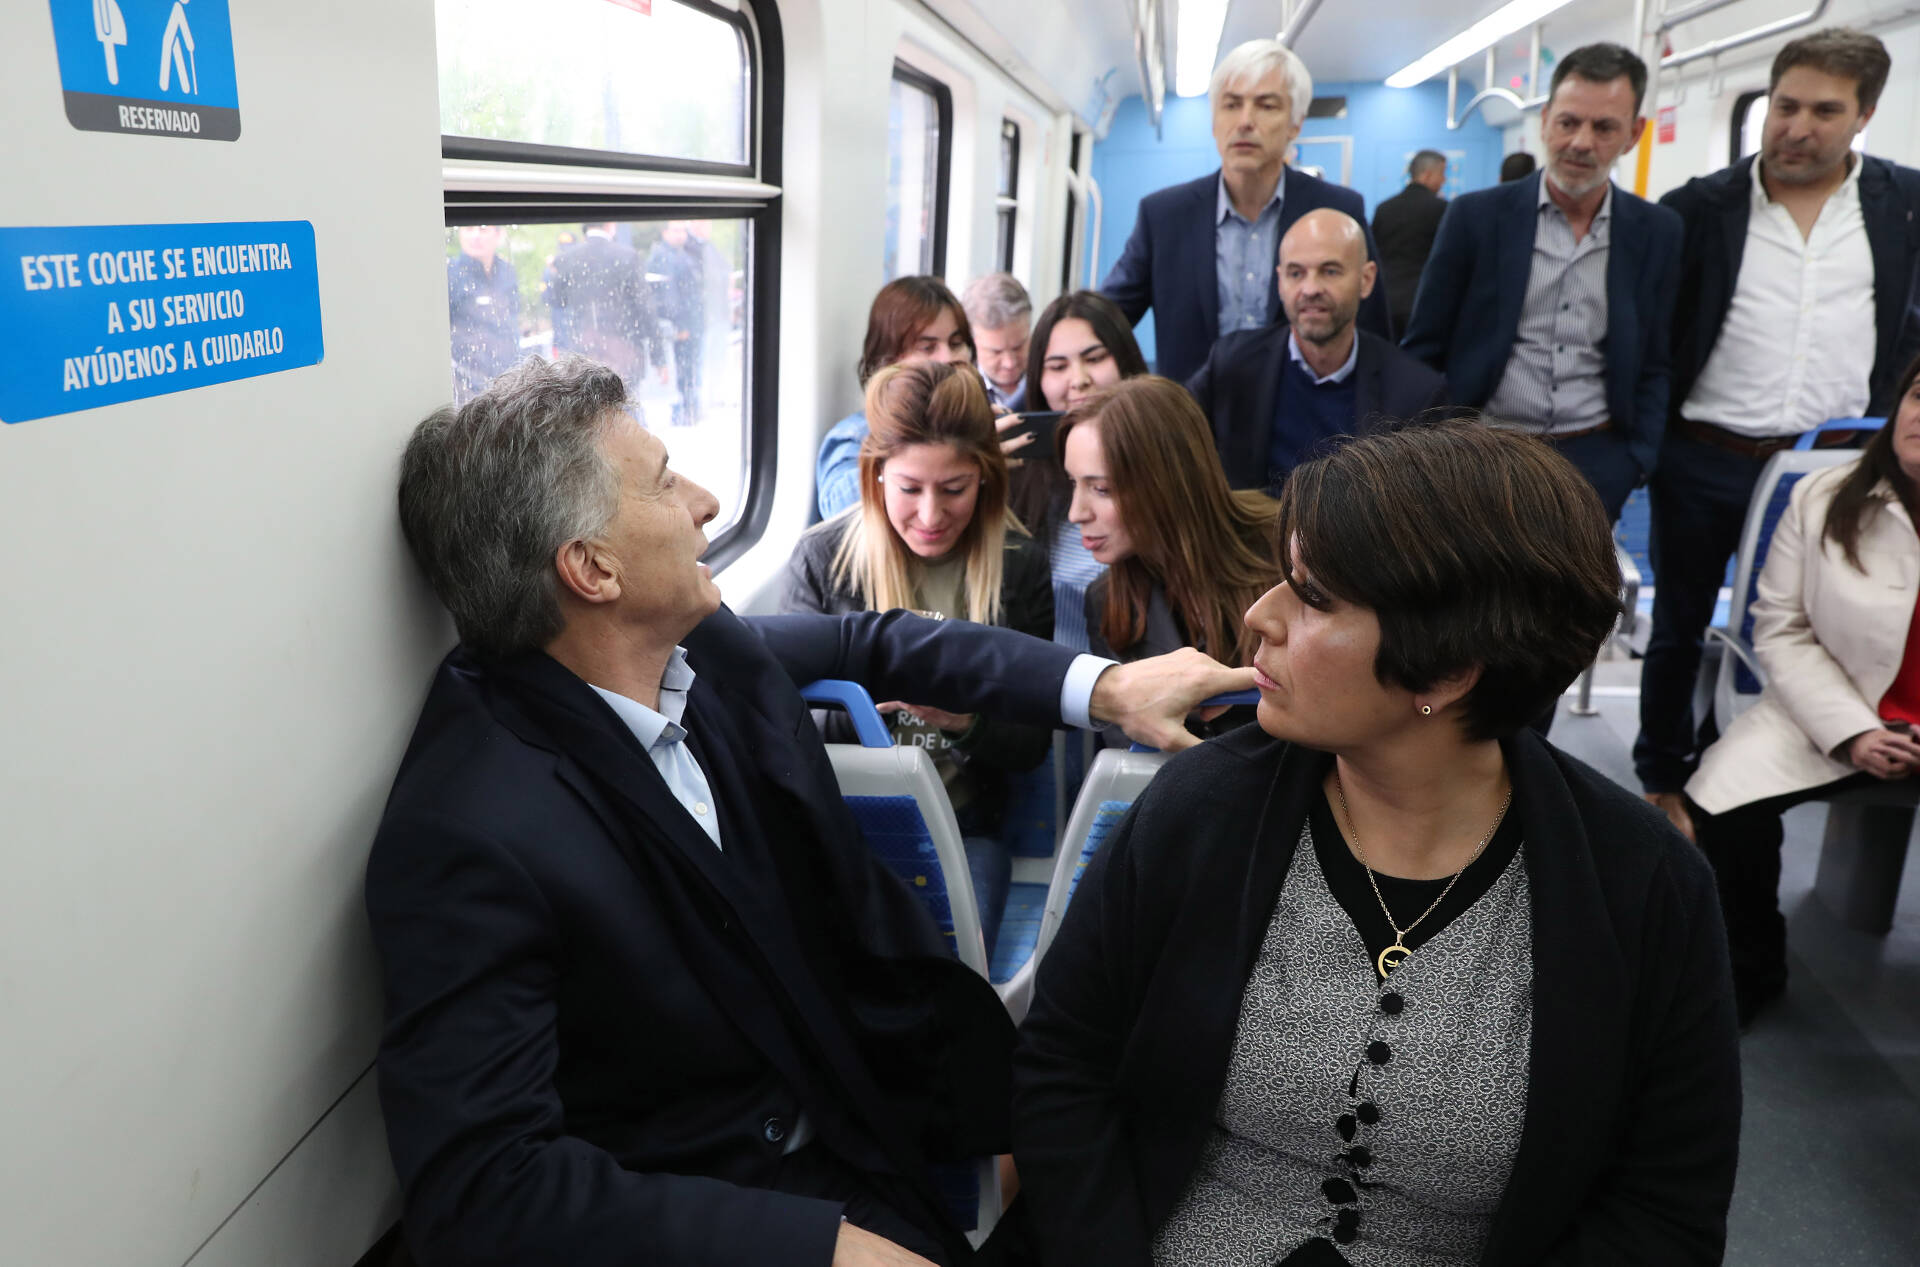 El presidente Macri encabezó la recorrida inaugural del ramal electrificado Vía Circuito del ferrocarril Roca